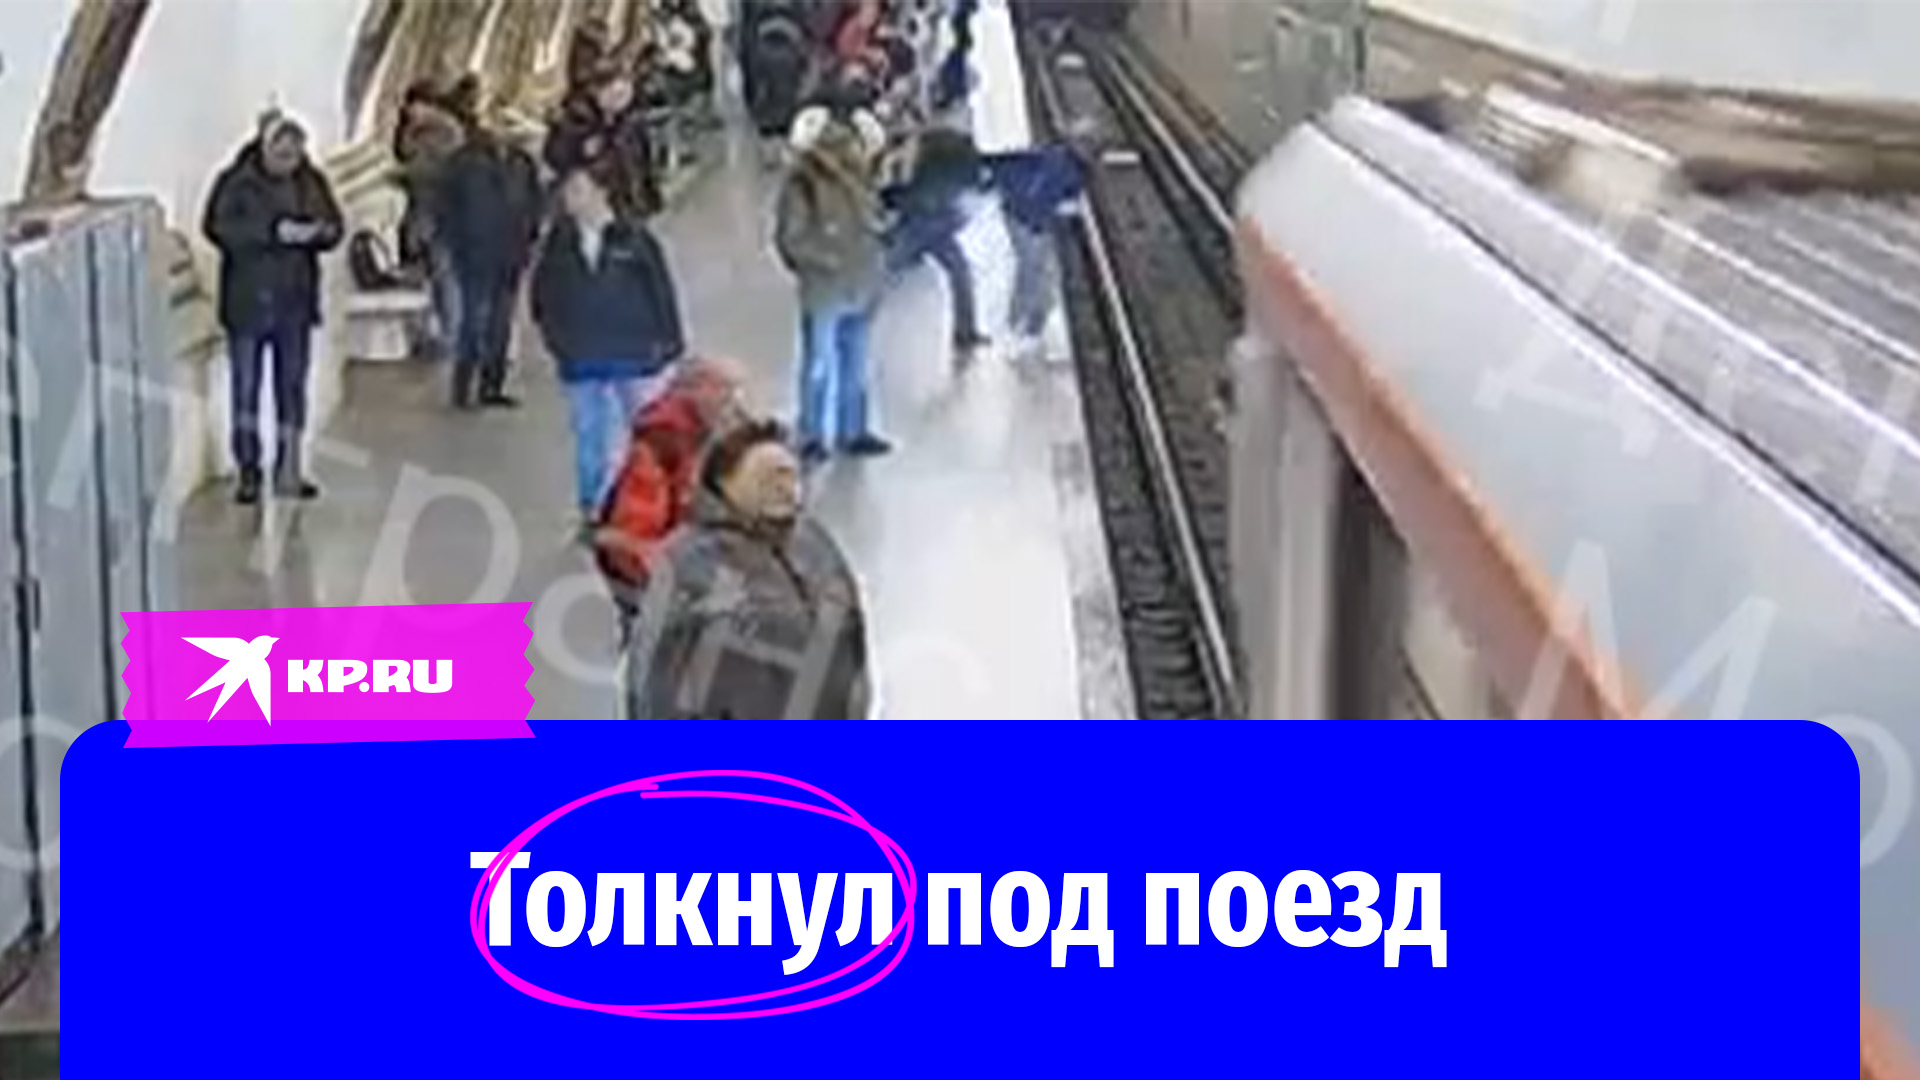 Мужчина столкнул девушку в метро. Столкнул под поезд в метро. Мужчина столкнул в метро. Мальчика толкнули в метро.